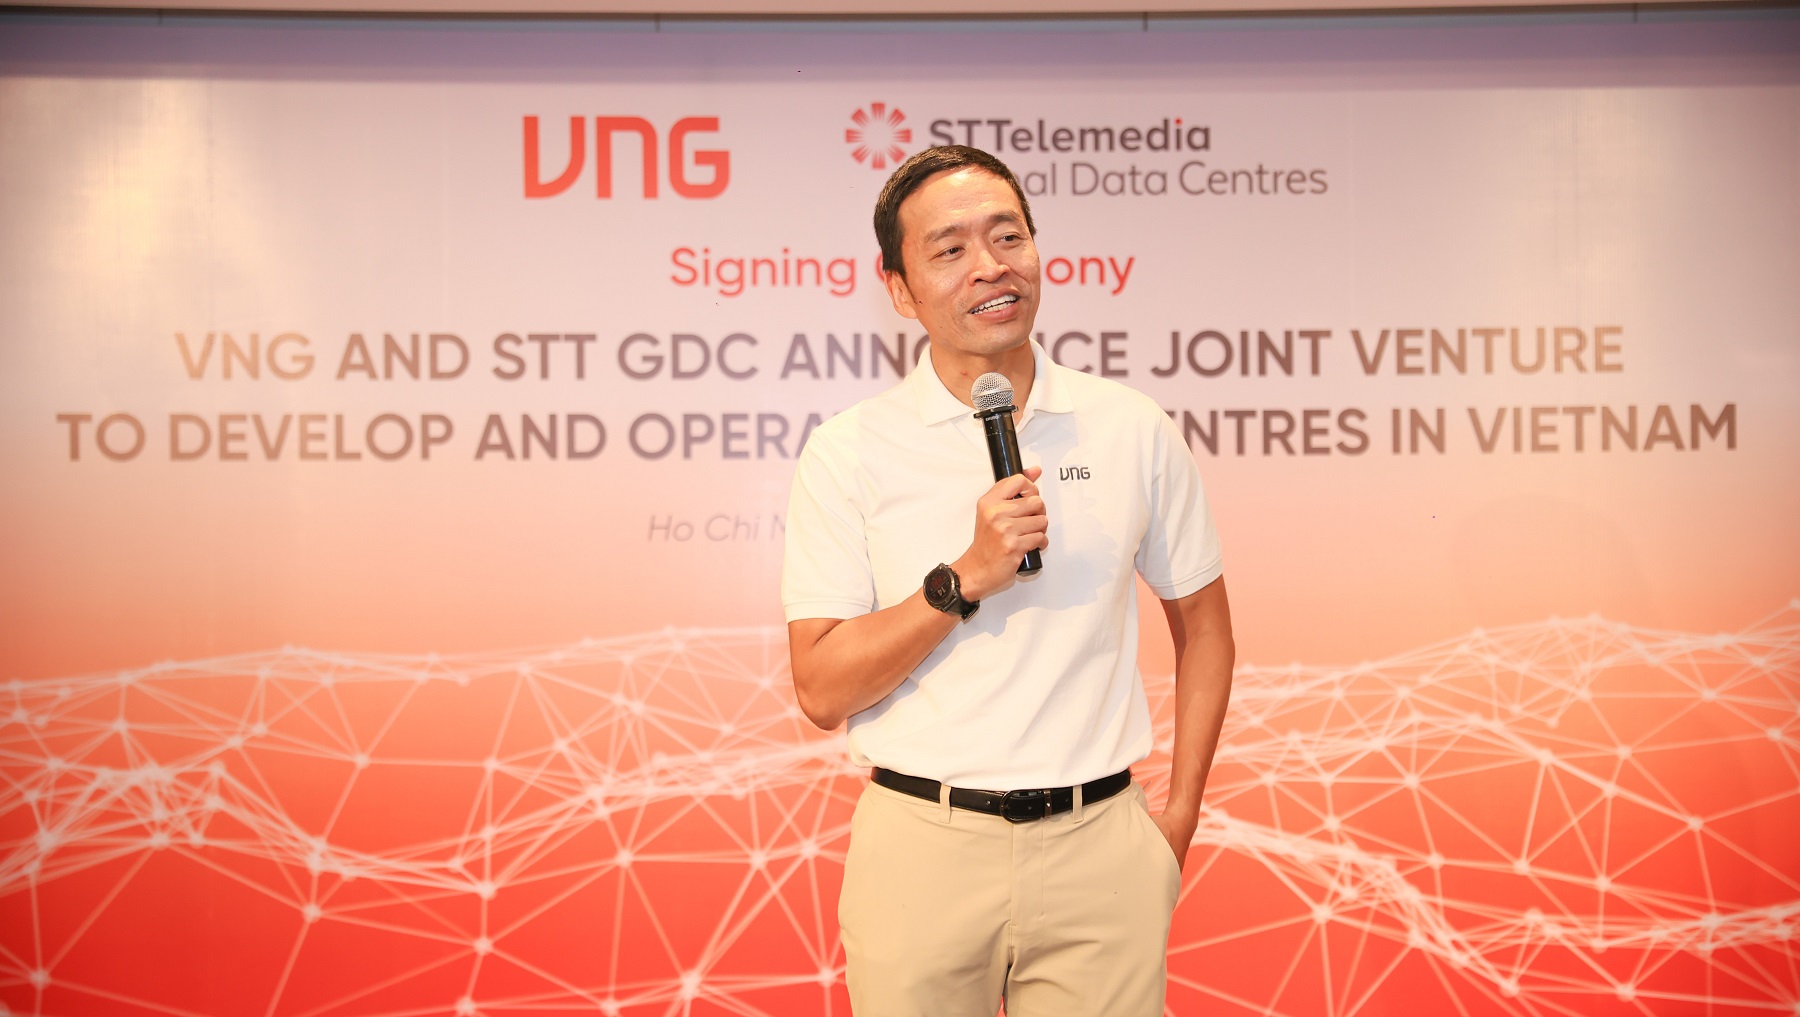 STT GDC hợp tác cùng VNG xây dựng và vận hành các dự án trung tâm dữ liệu theo tiêu chuẩn quốc tế tại Việt Nam 8